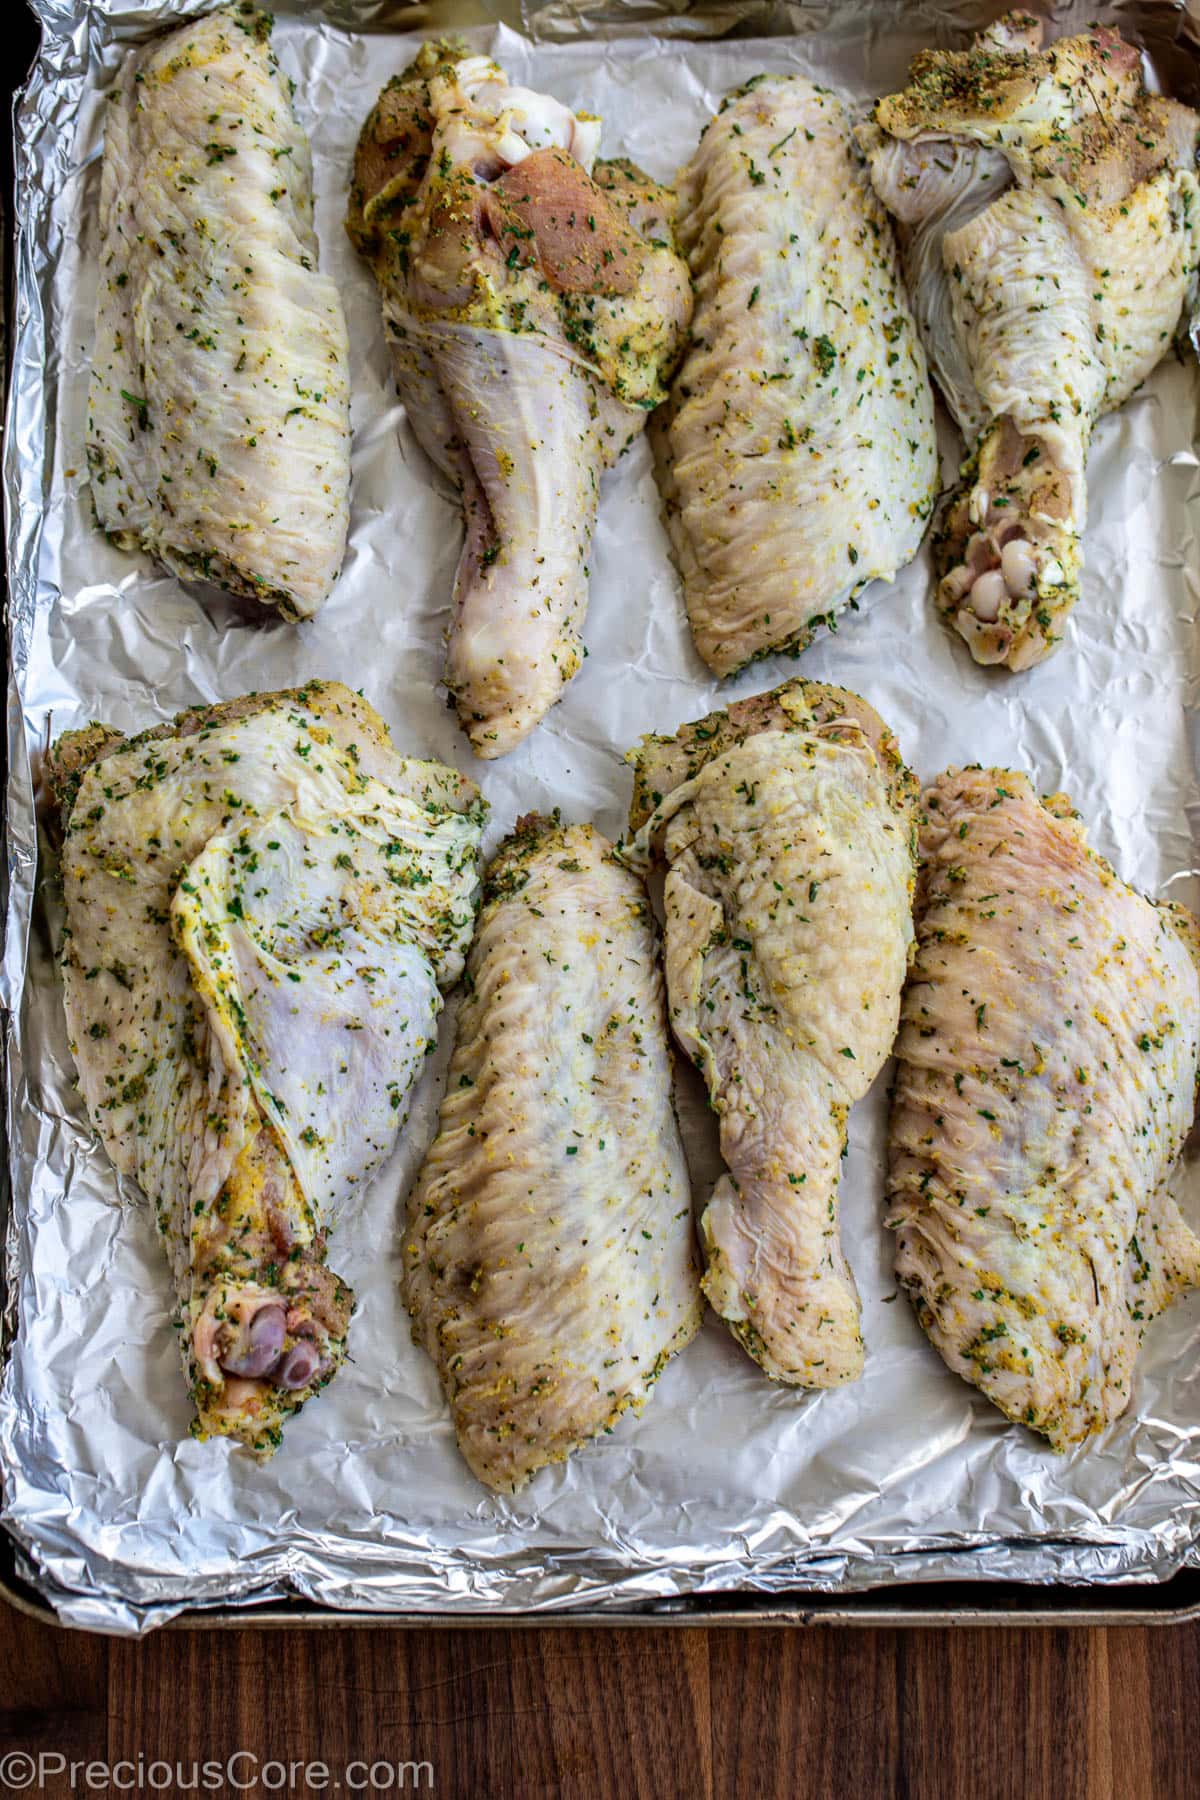 Seasoned turkey wings on a baking sheet.